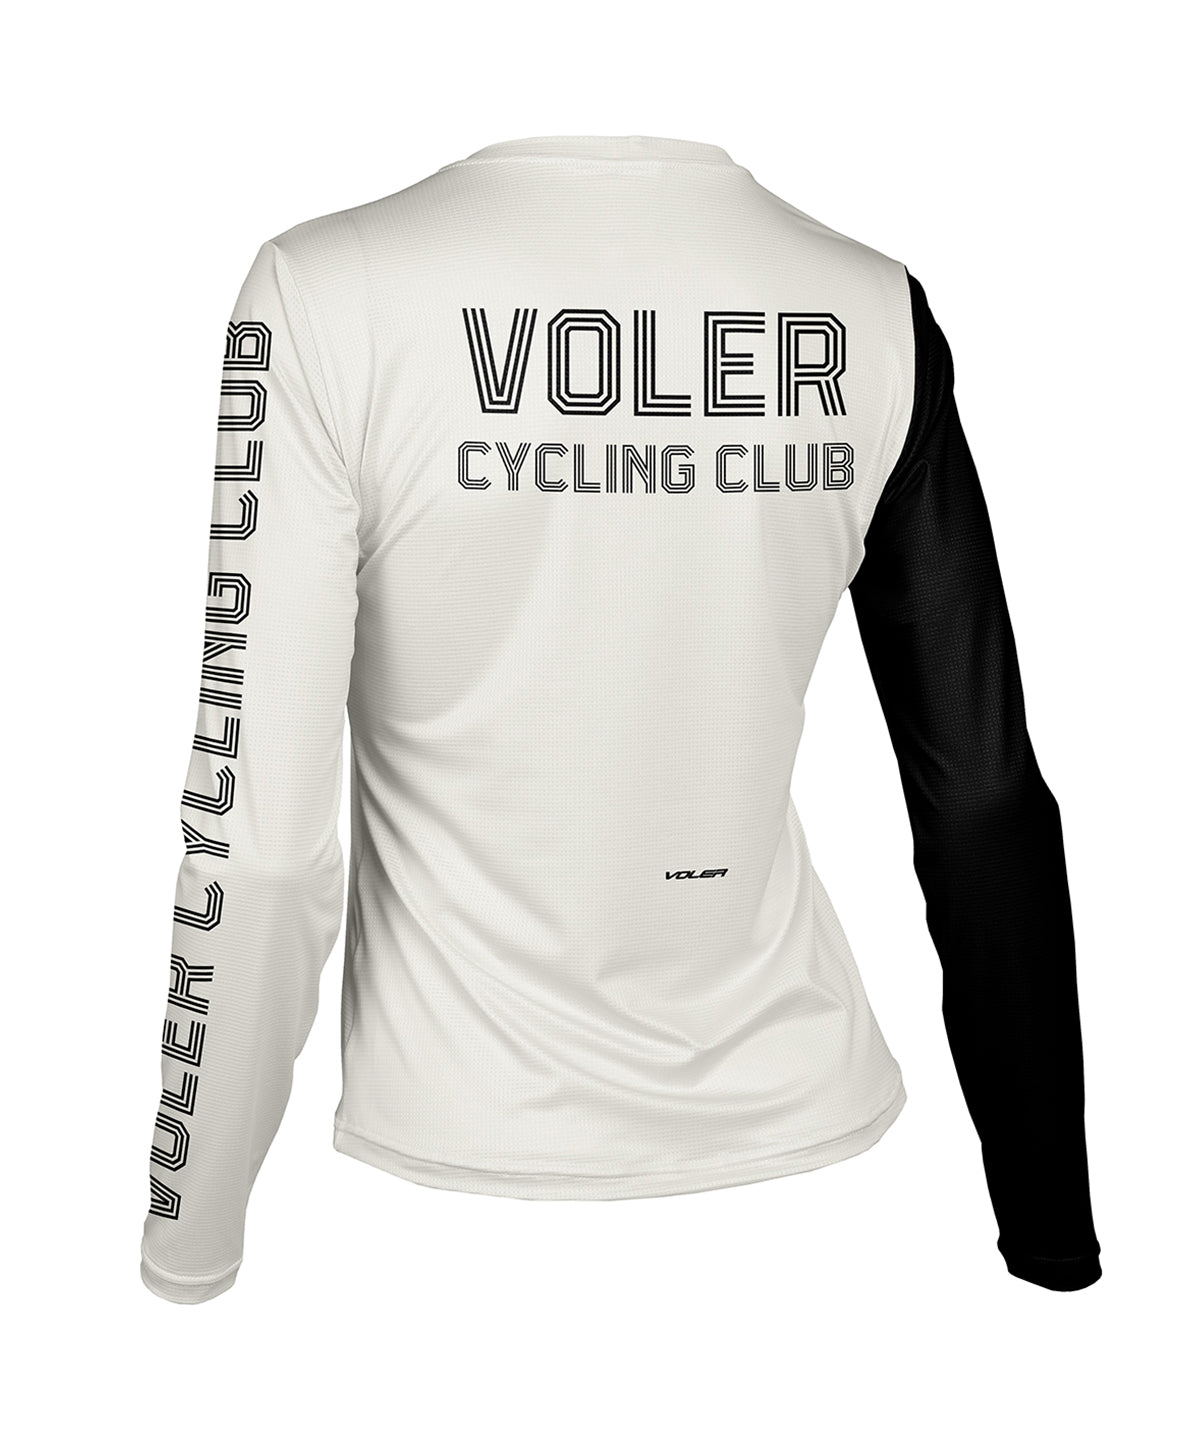 W. ENDURANCE AIR LS TEE - VOLER CYCLING CLUB